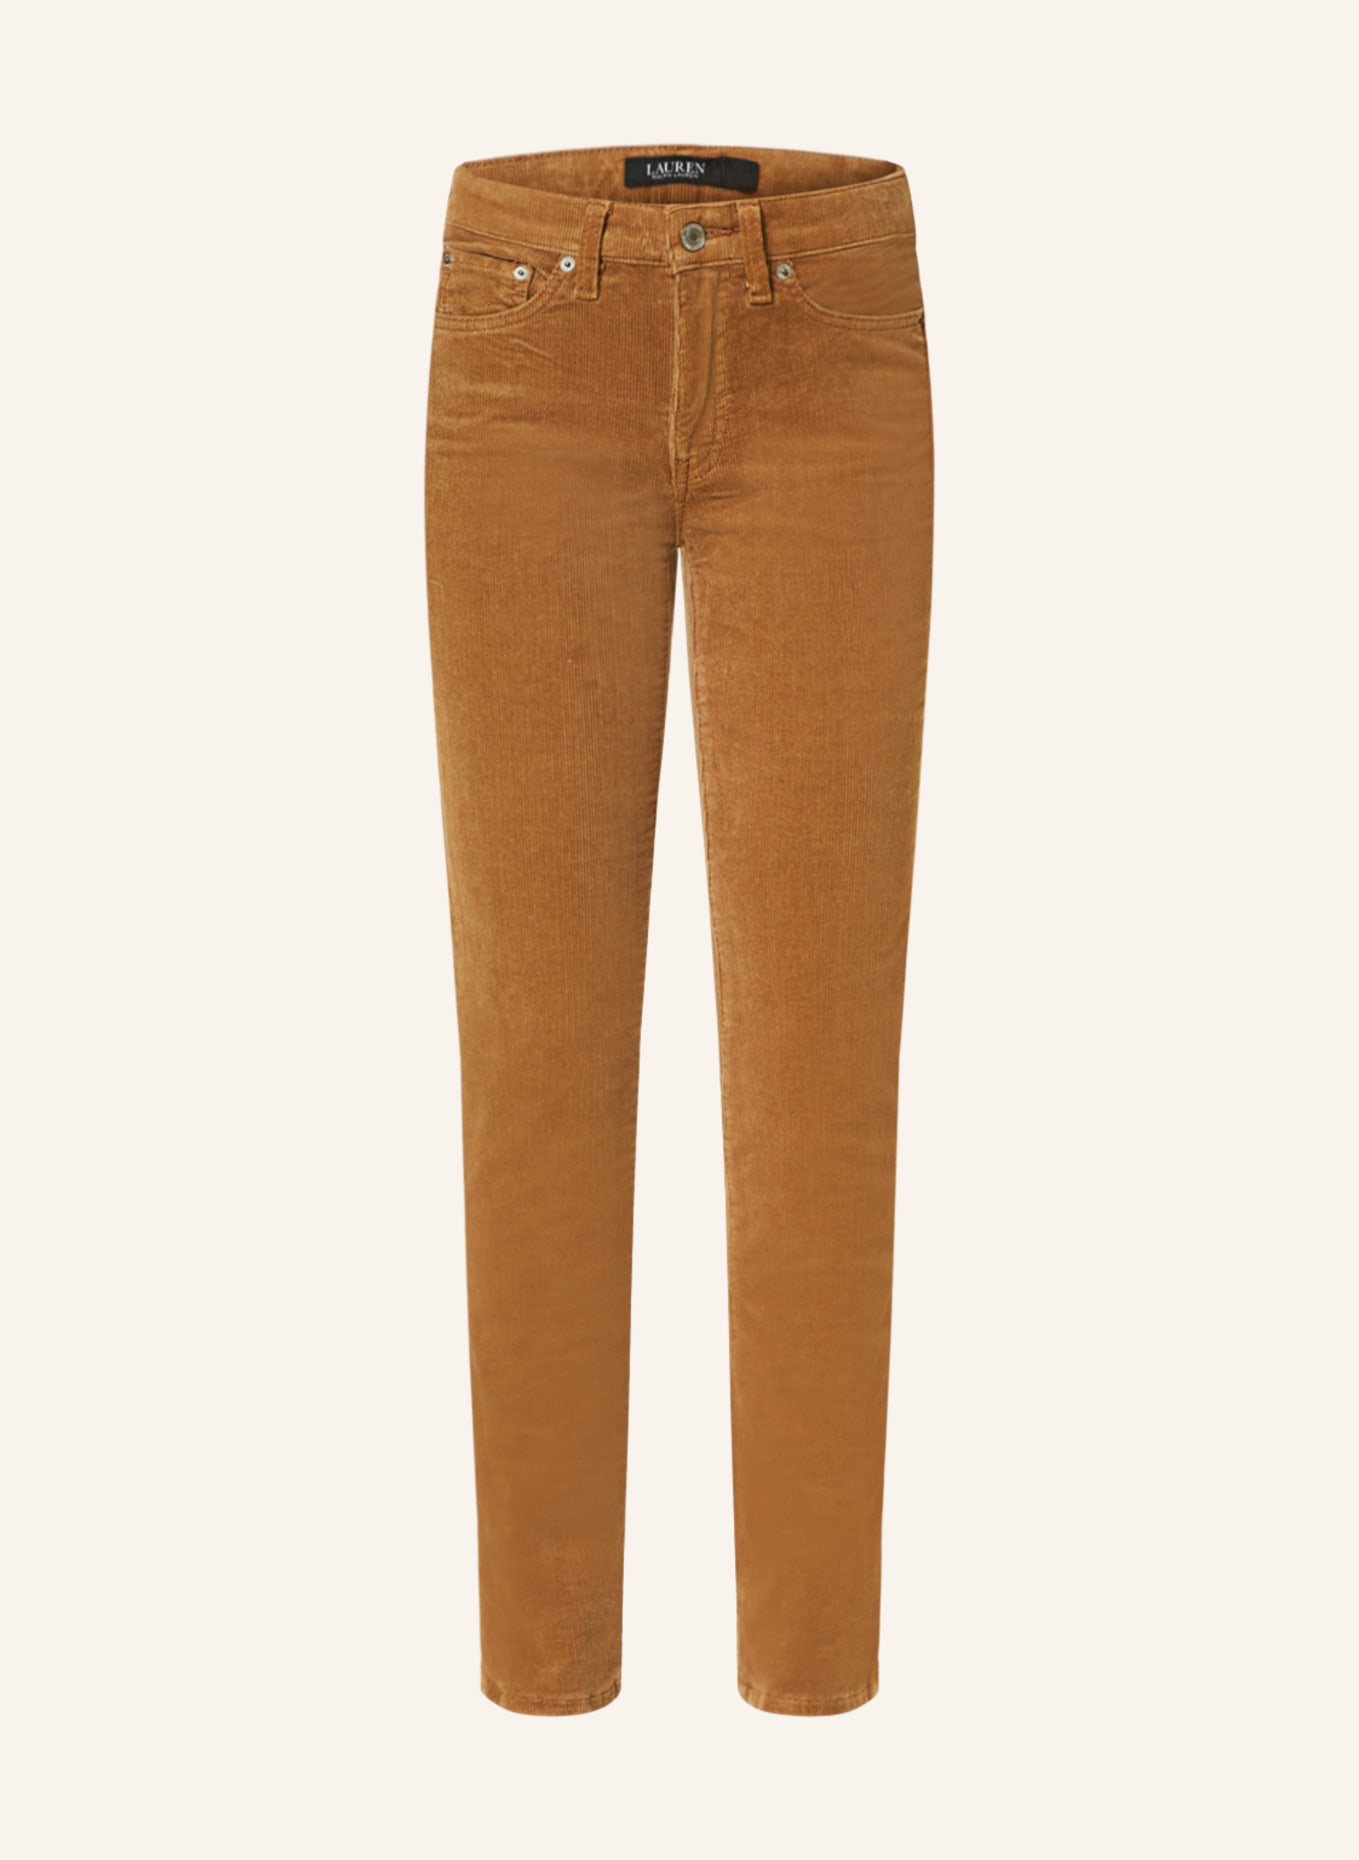 LAUREN RALPH LAUREN Corduroy trousers, Color: COGNAC (Image 1)